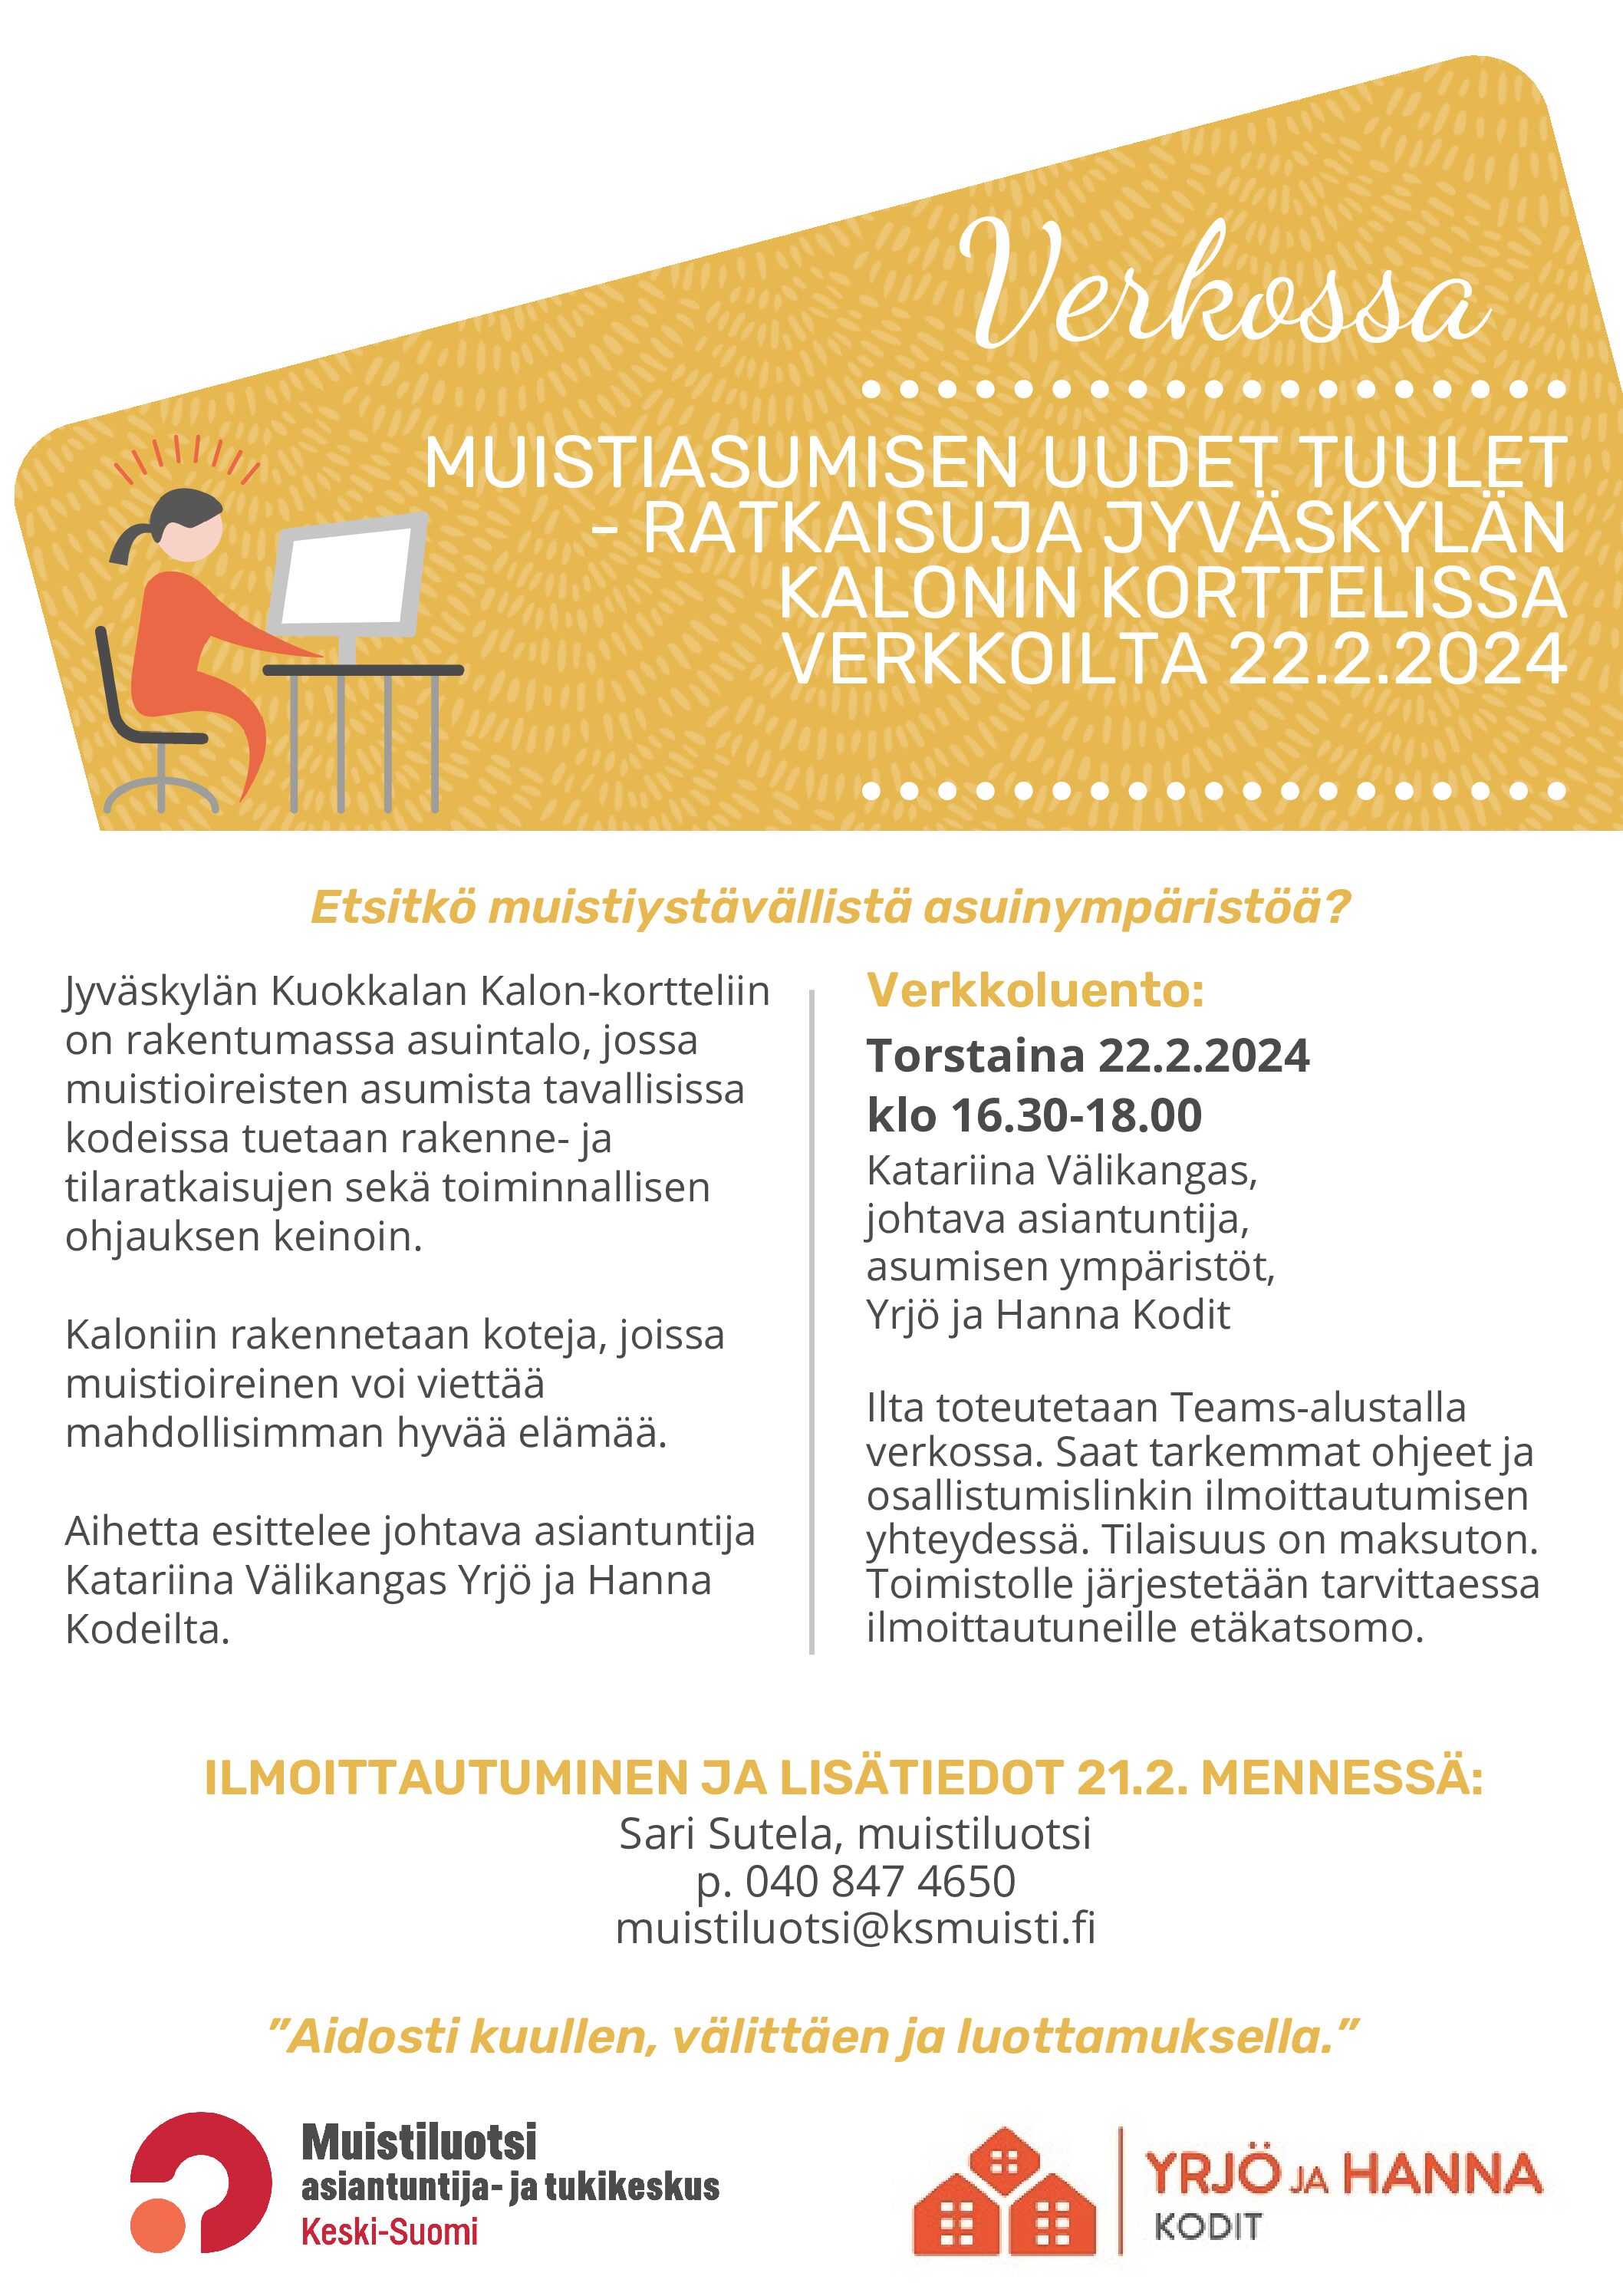 Muistiasumisen uudet tuulet – ratkaisuja Jyväskylän Kalon-korttelissa -verkkoilta to 22.2. klo 16.30